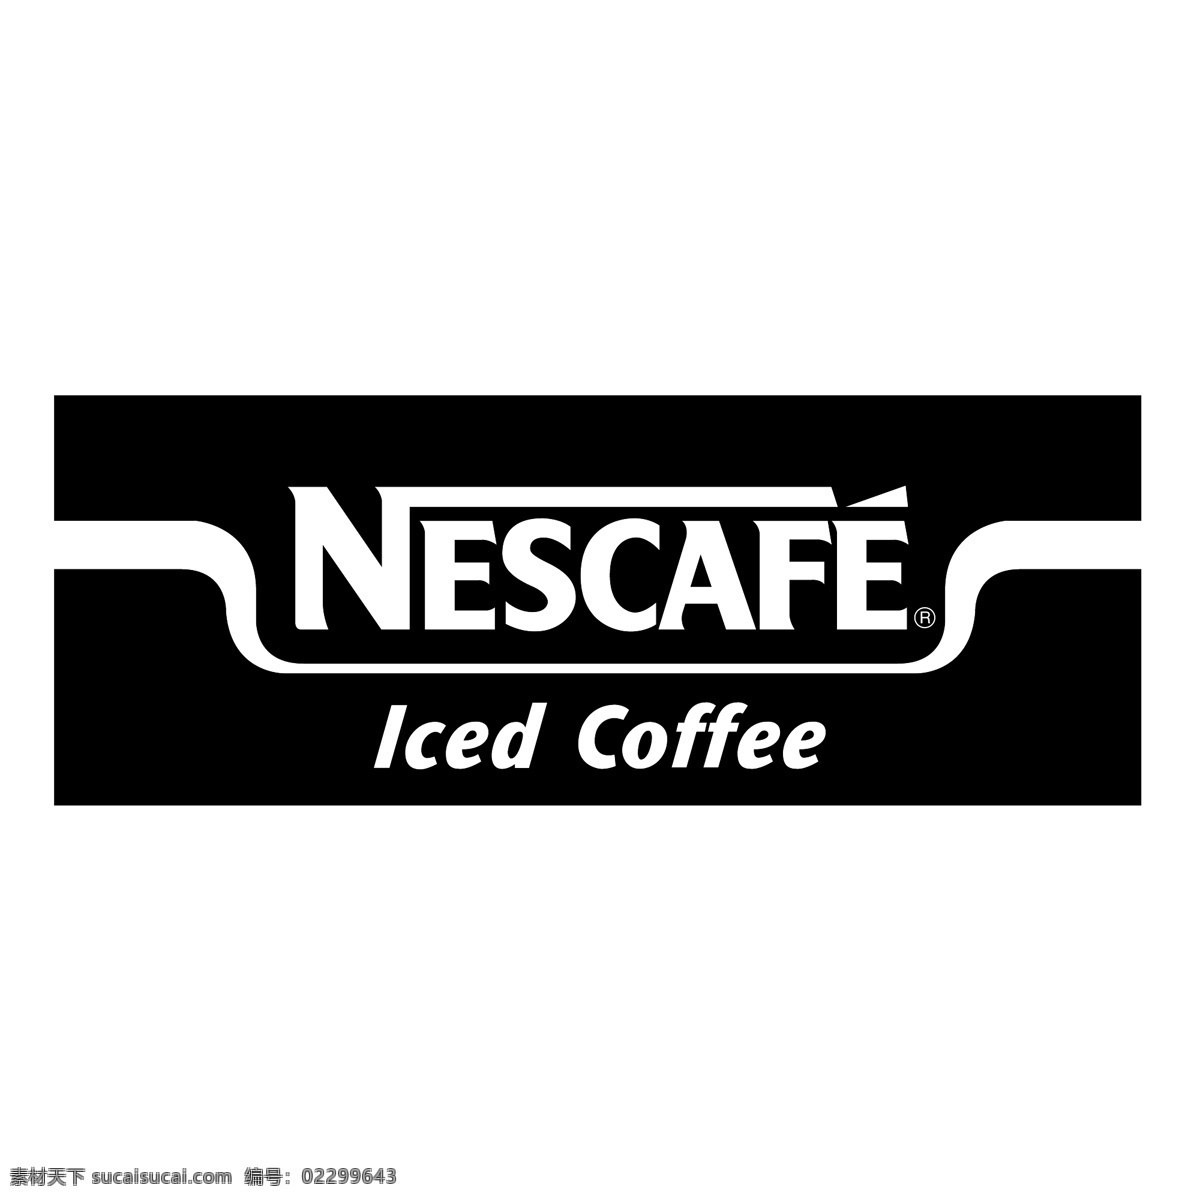 冰咖啡 咖啡 雀巢 雀巢冰咖啡 雀巢咖啡 图形设计 雀巢冰 冰 冰咖啡向量 咖啡免费下载 免费 矢量 艺术 自由 自由的咖啡 矢量图 建筑家居